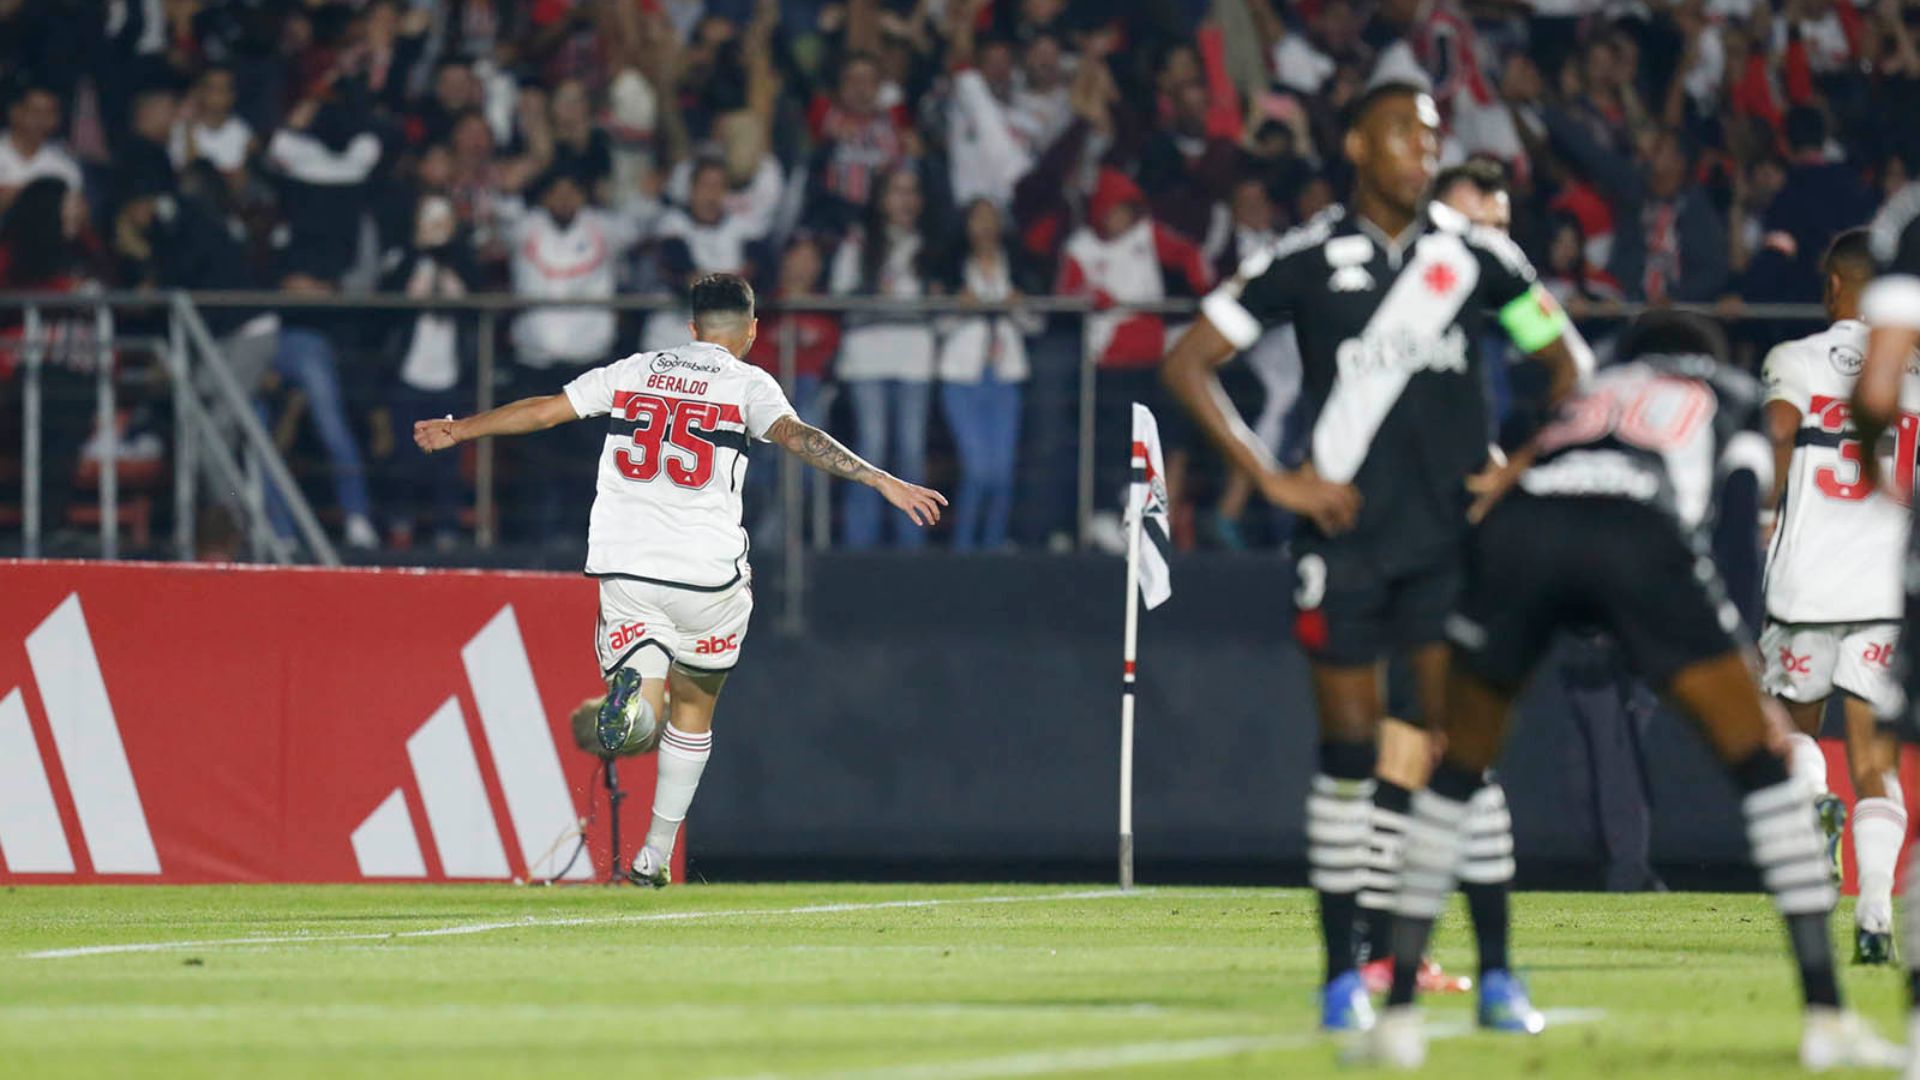 Beraldo comemorando gol marcado contra o Vasco 